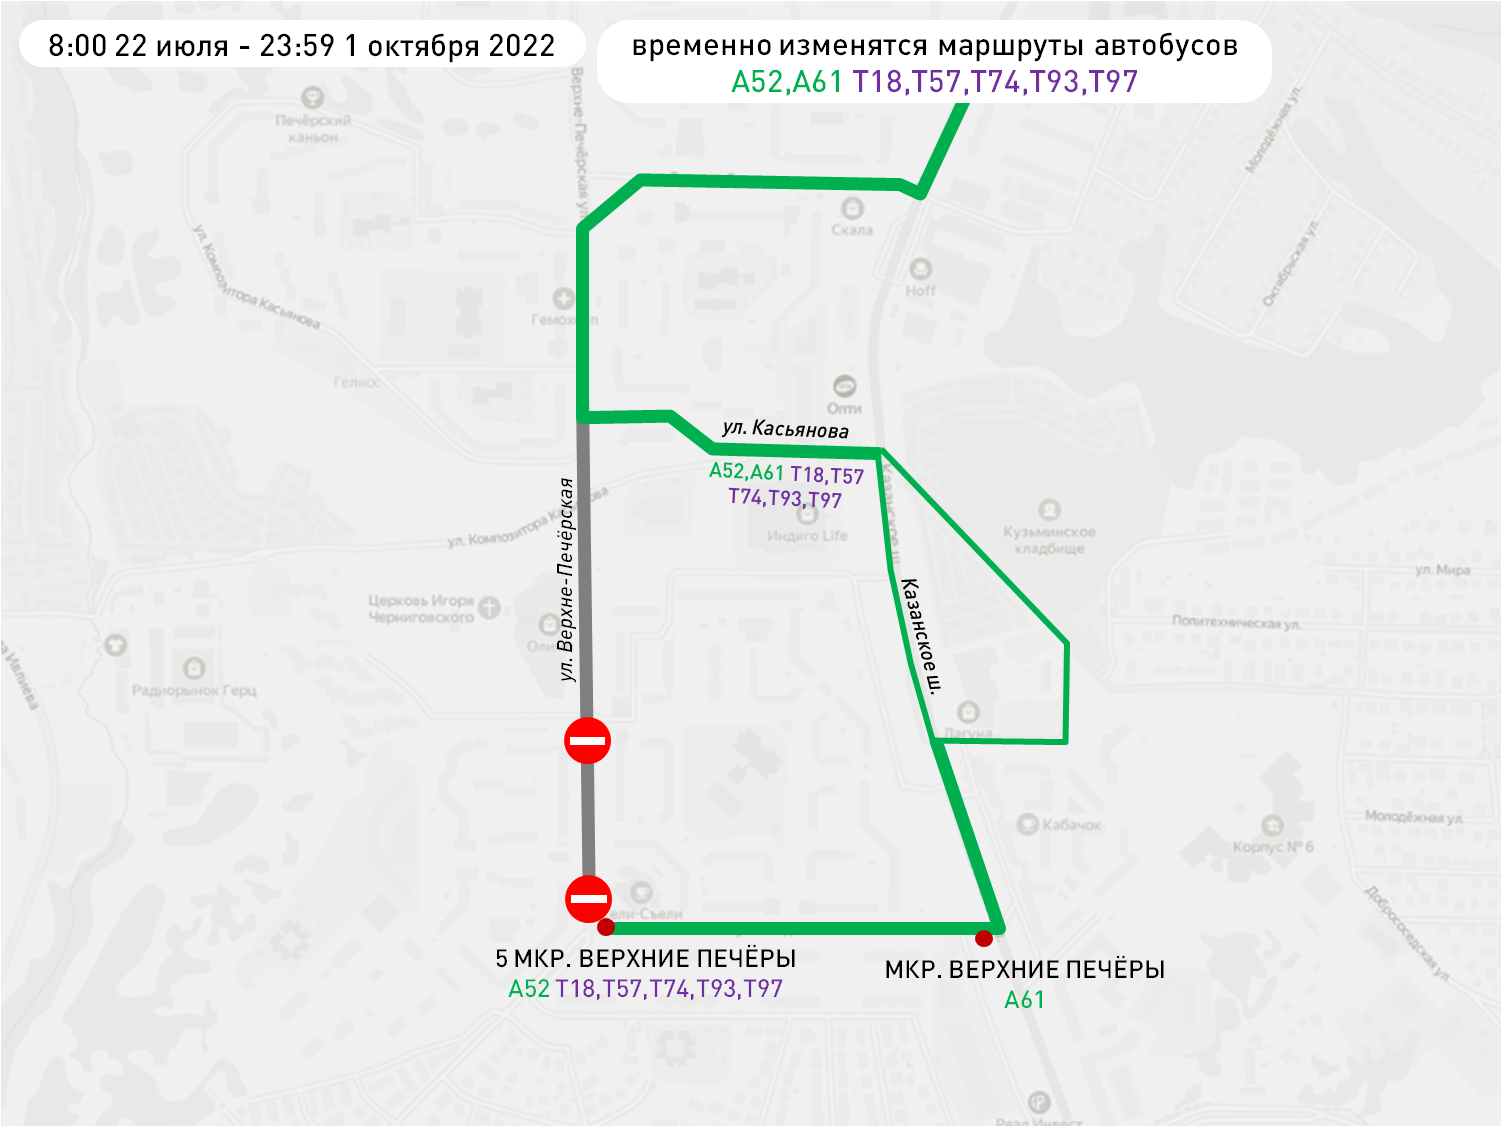 Семь автобусов поменяют свои маршруты в Нижнем Новгороде до октября